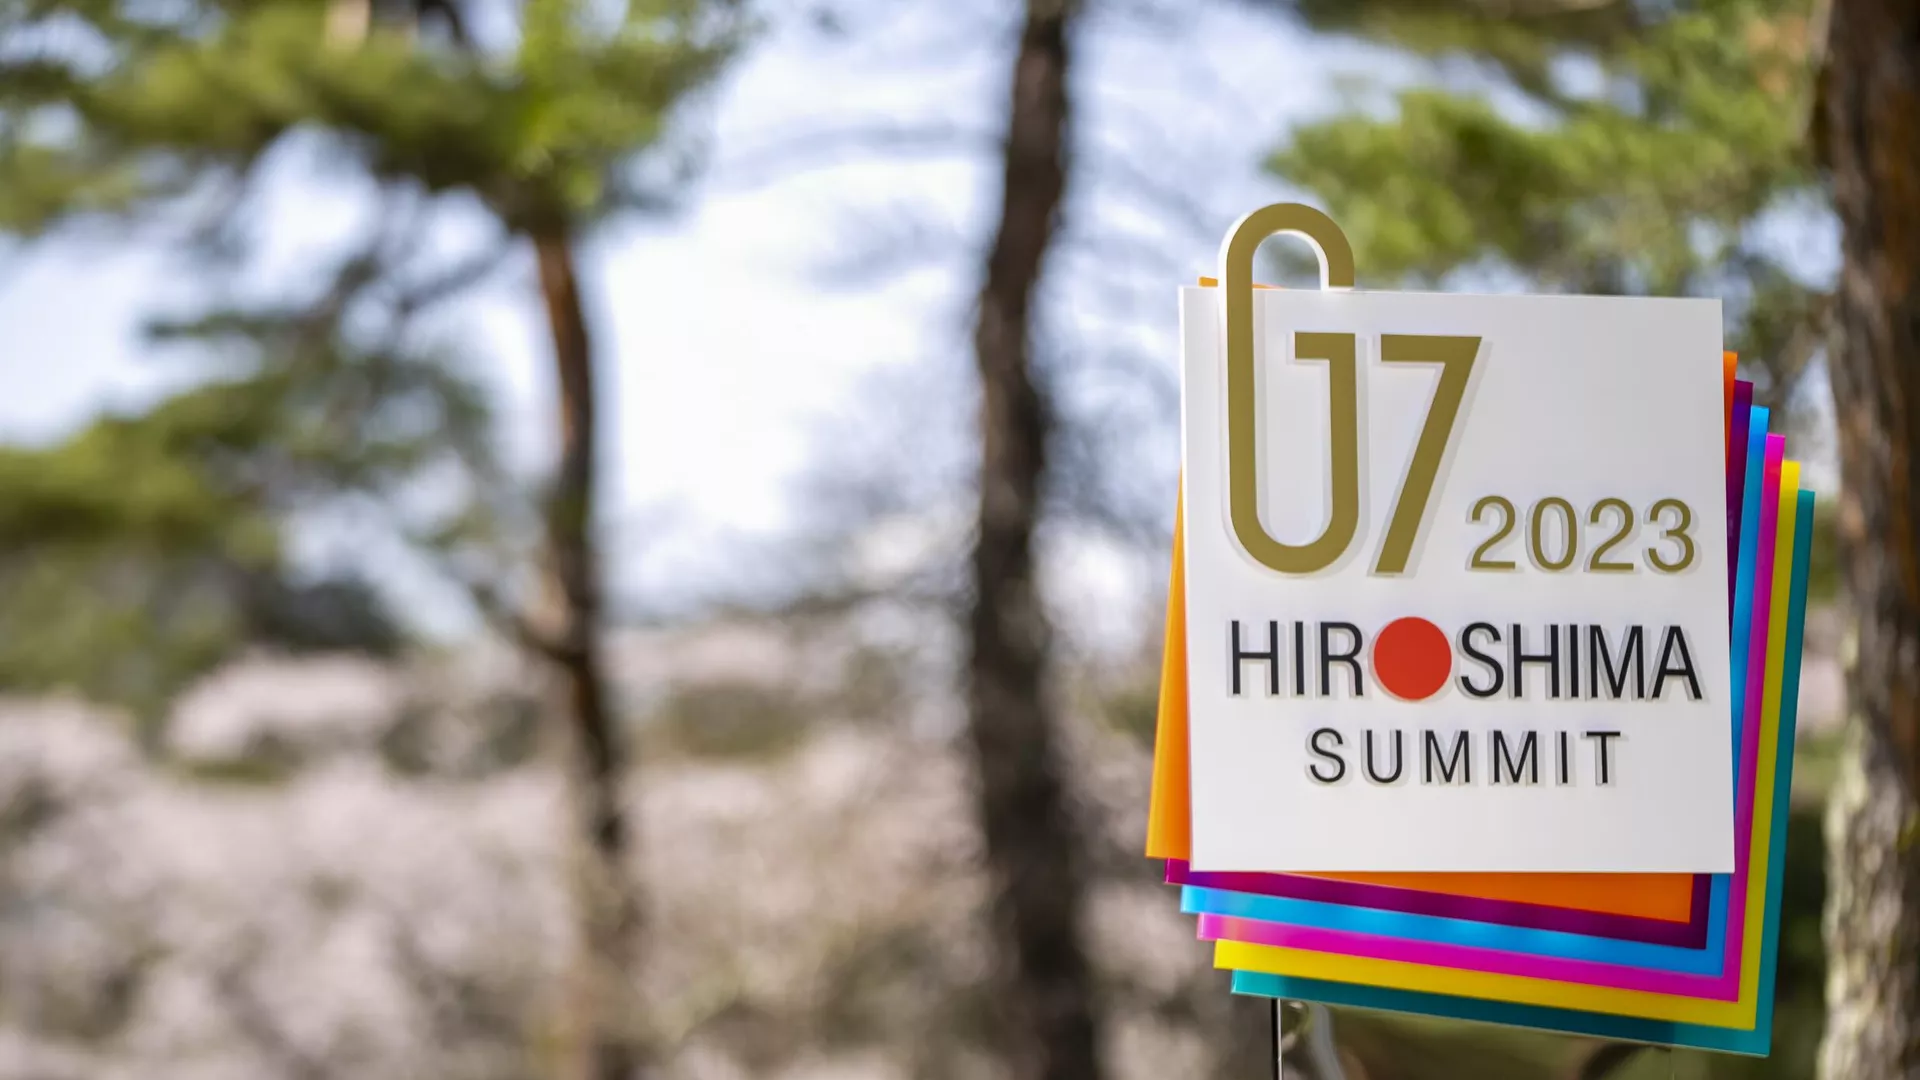 МИД России прокомментировал итоги саммита G7 в Хиросиме